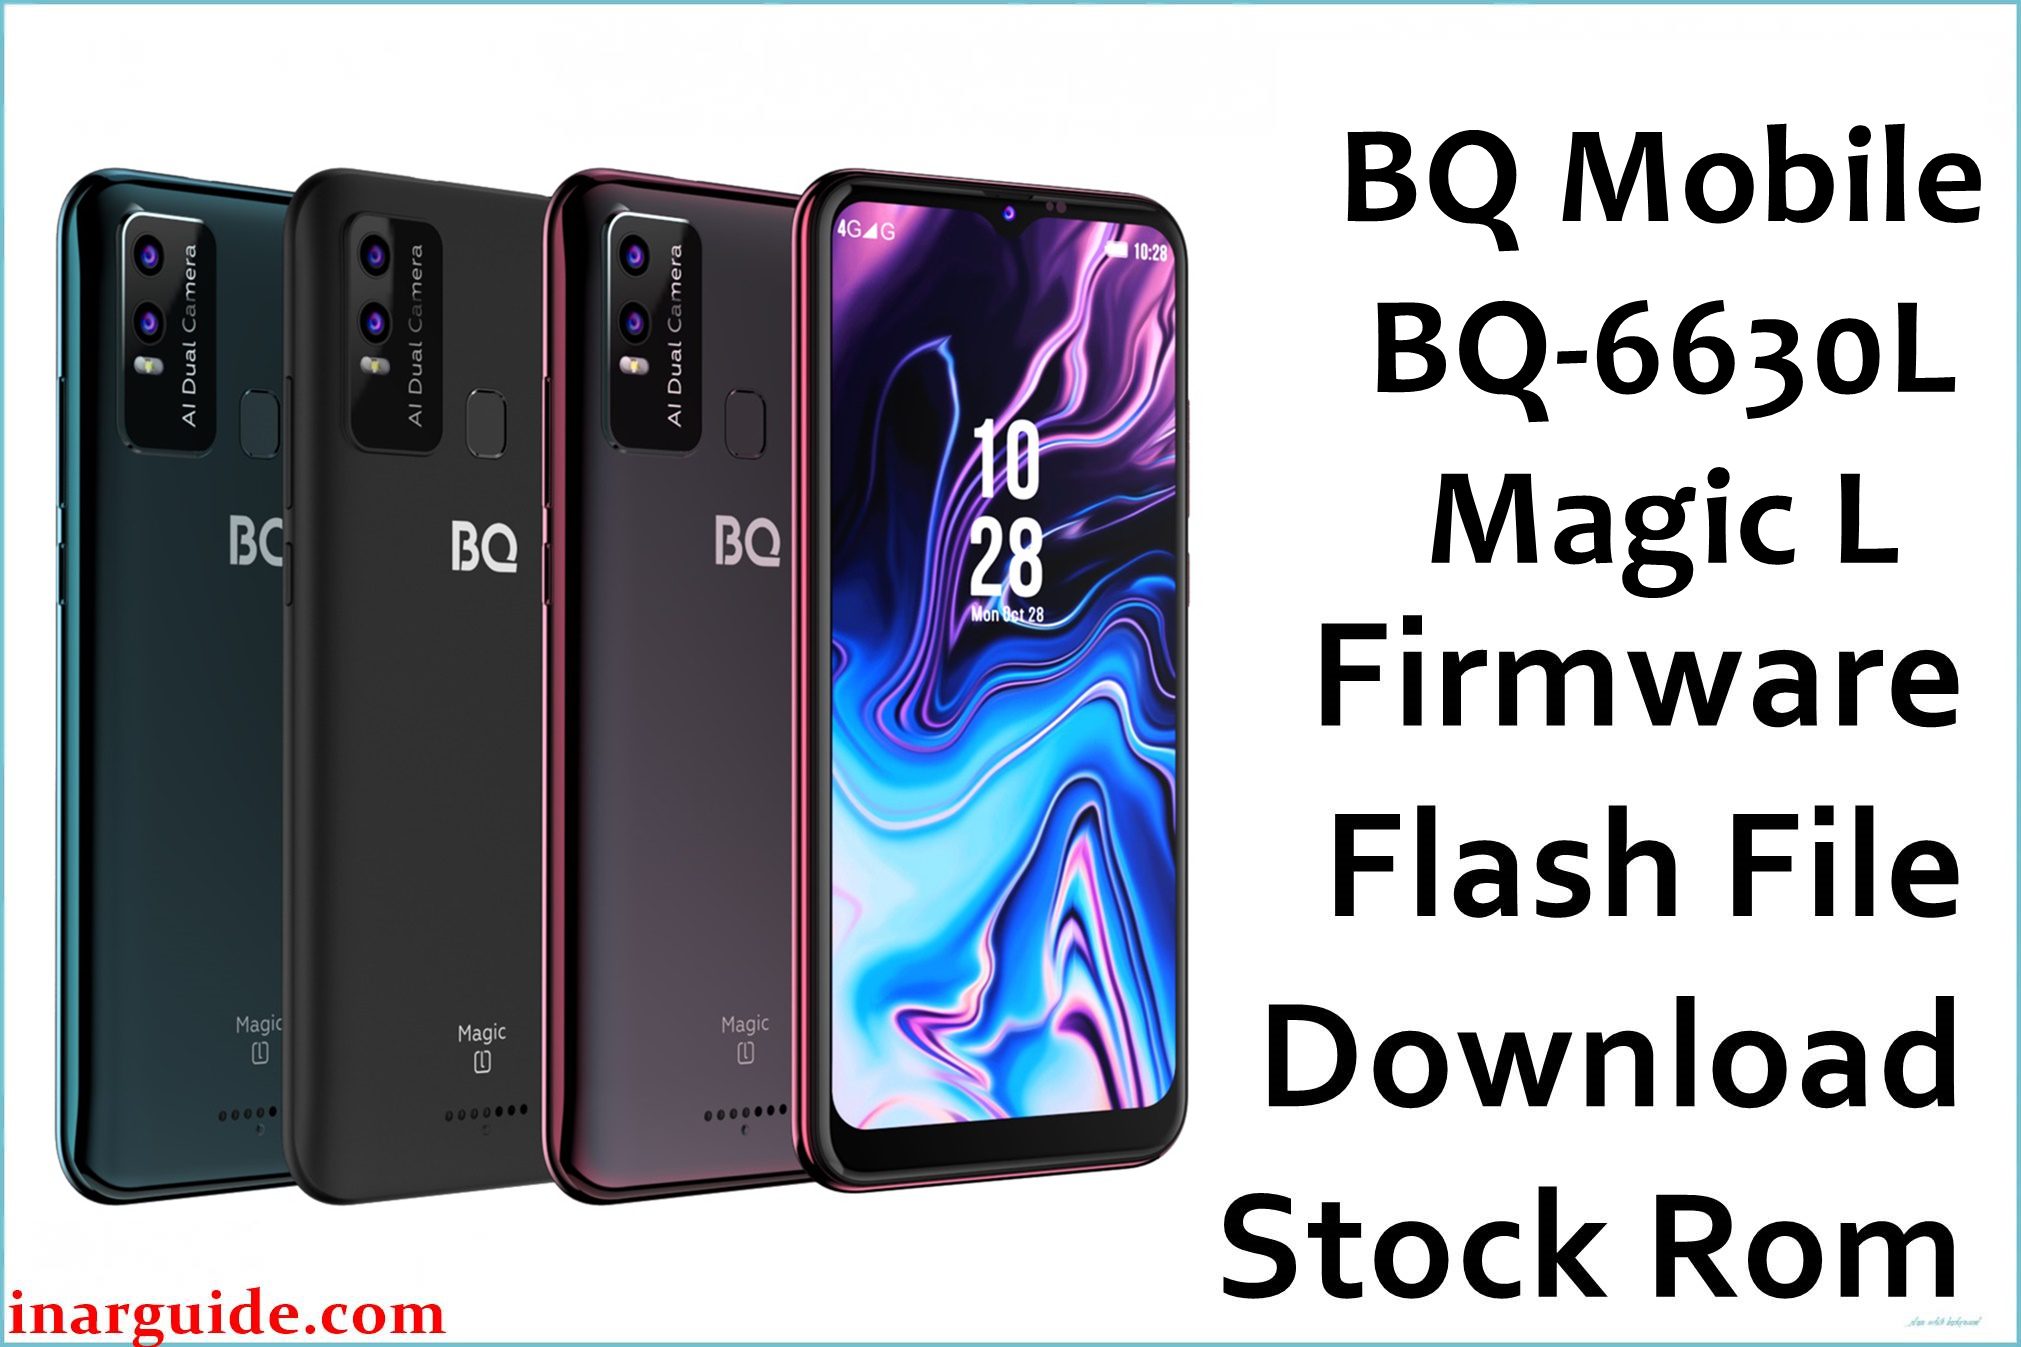 BQ Mobile BQ 6630L Magic L